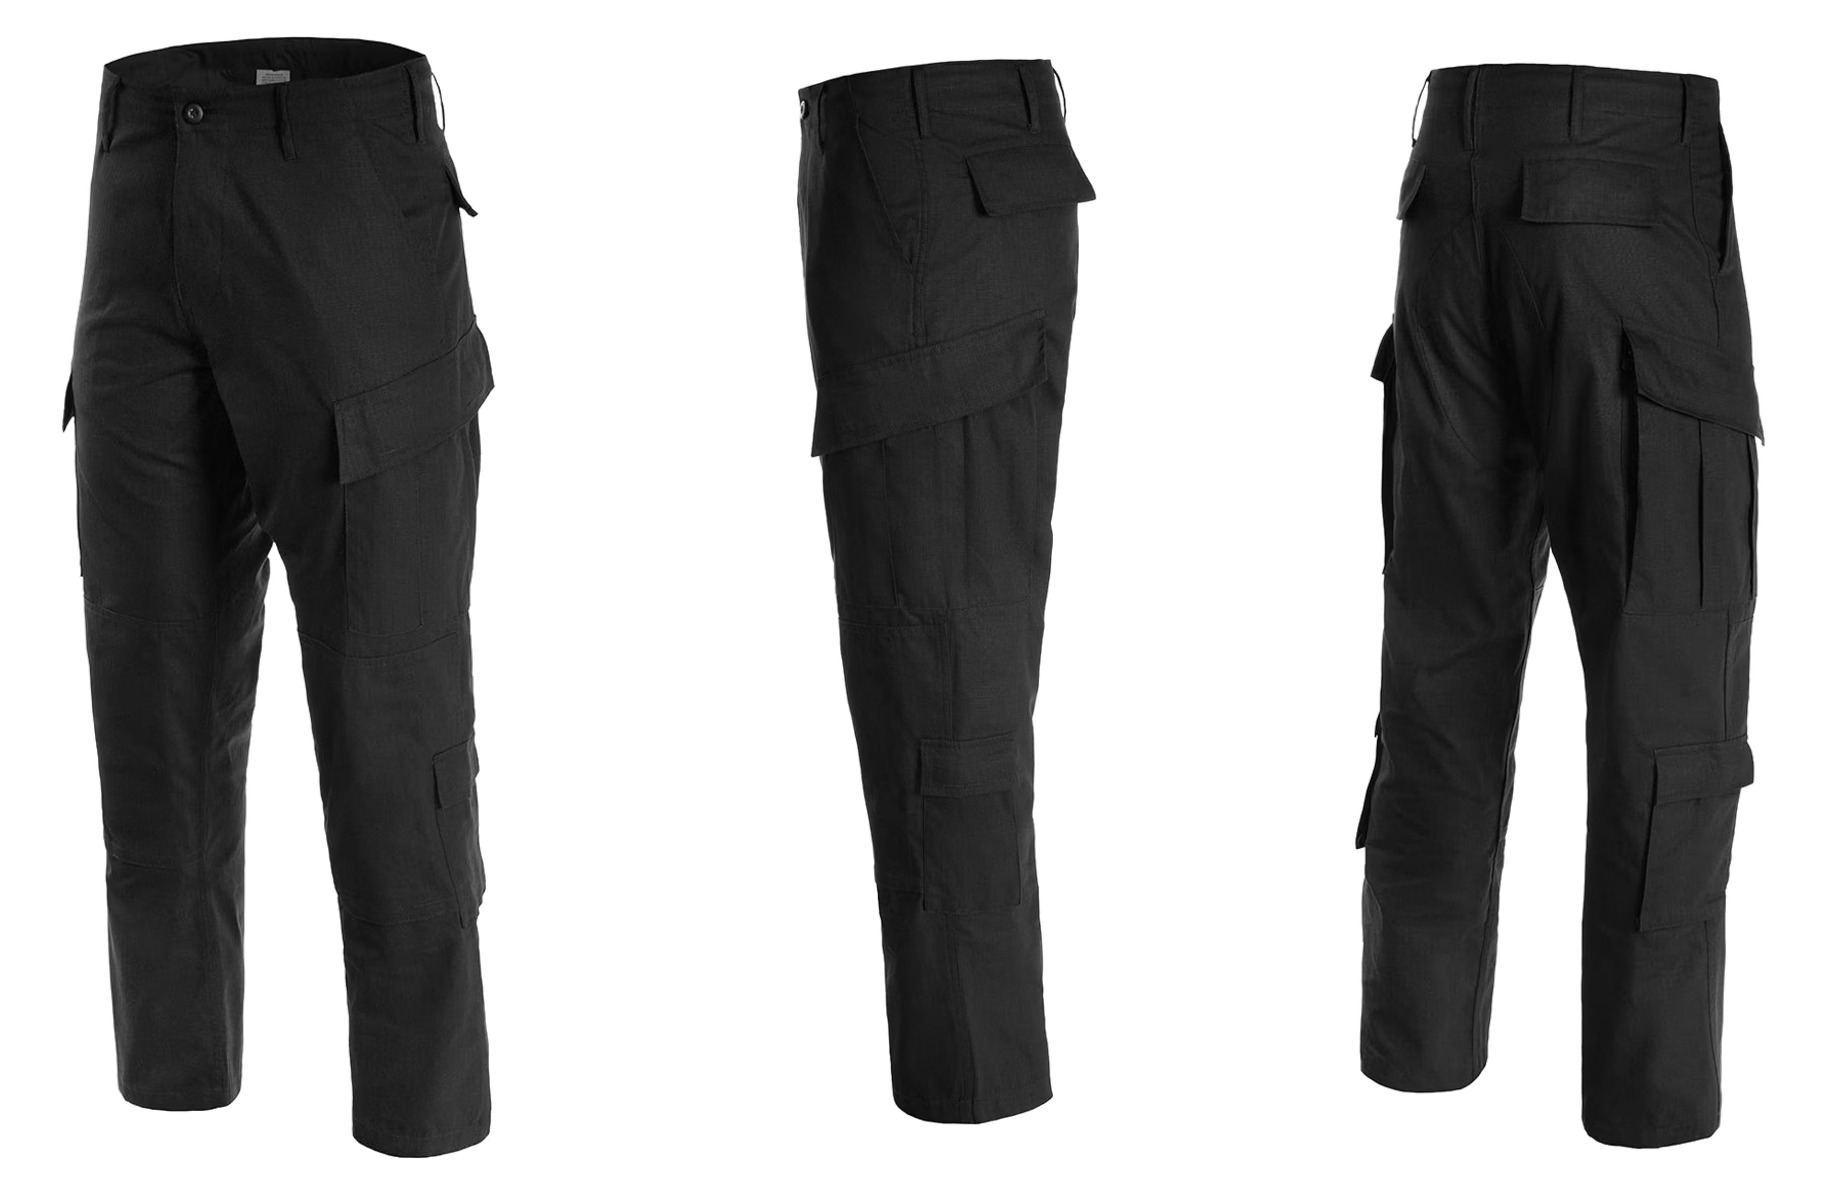 Pridobite svoj par US vojaških hlač US Black - vrhunske taktične hlače za udobje, vzdržljivost in funkcionalnost. Primerno za vojaške operacije, pohodništvo, lov in varnostne sile. Opremite se s kakovostnim vojaškim oblačilom!